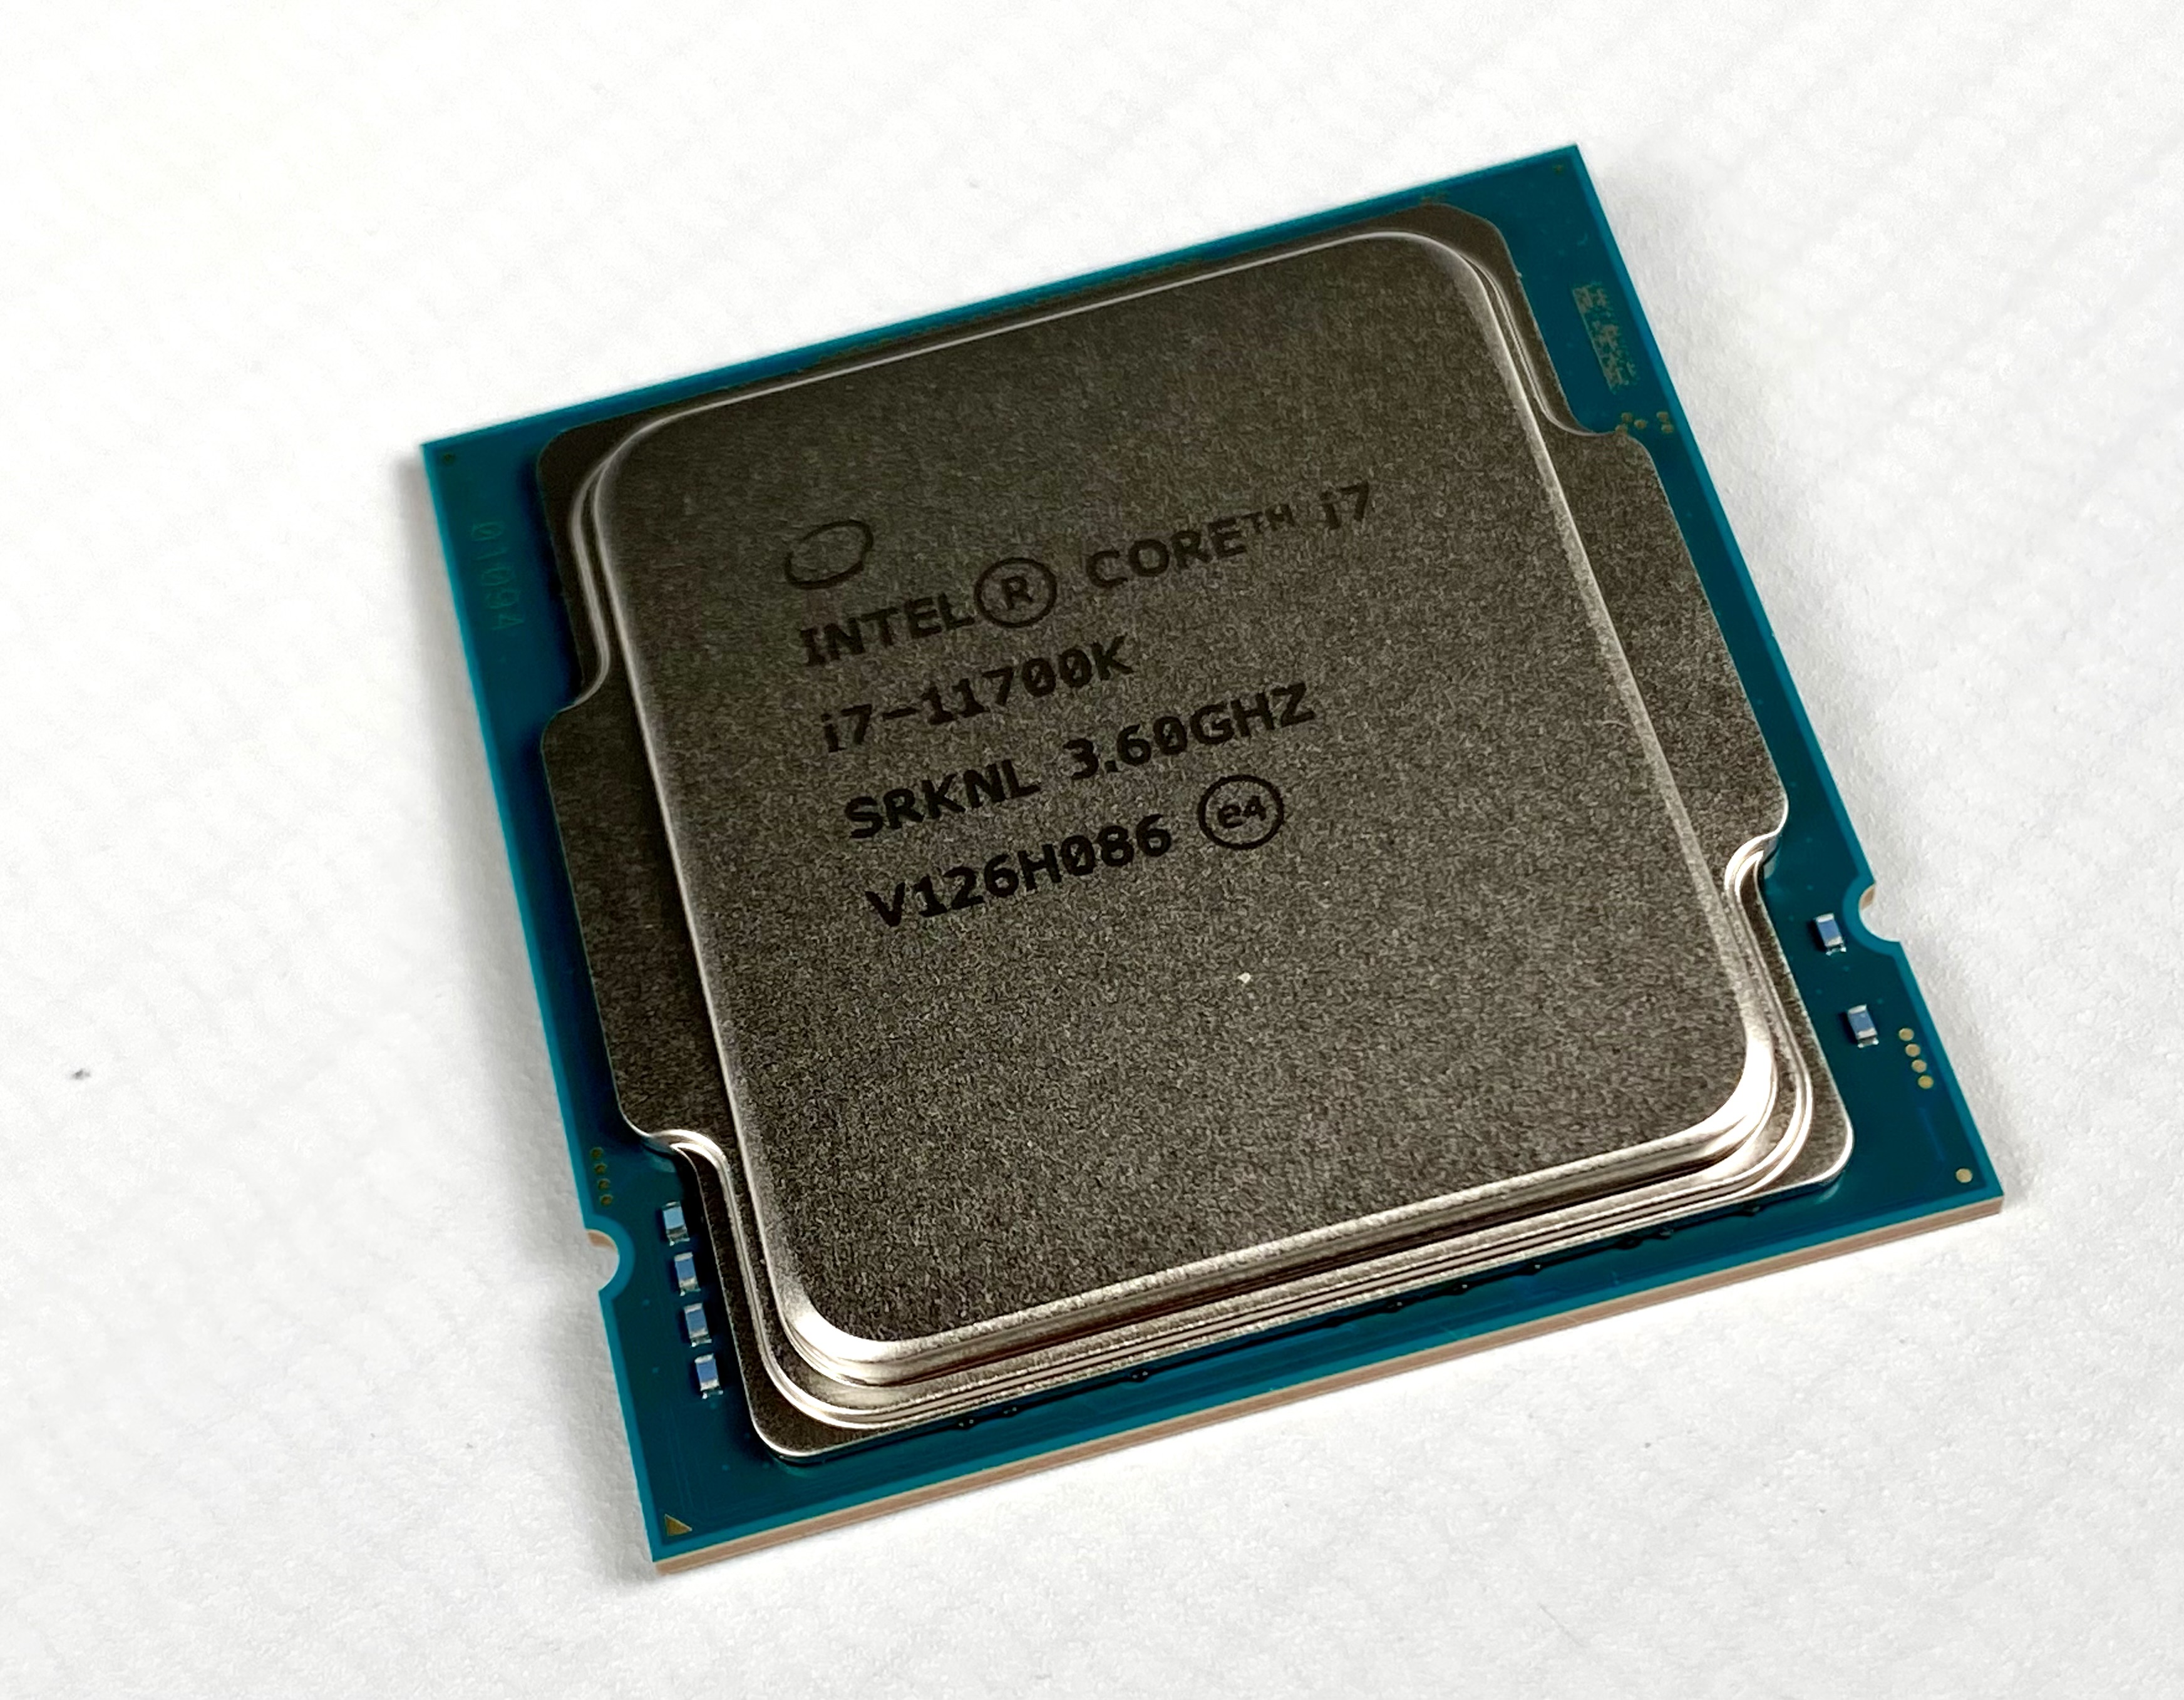 AMD Ryzen 7 5800X vs. Intel Core i7-11700K